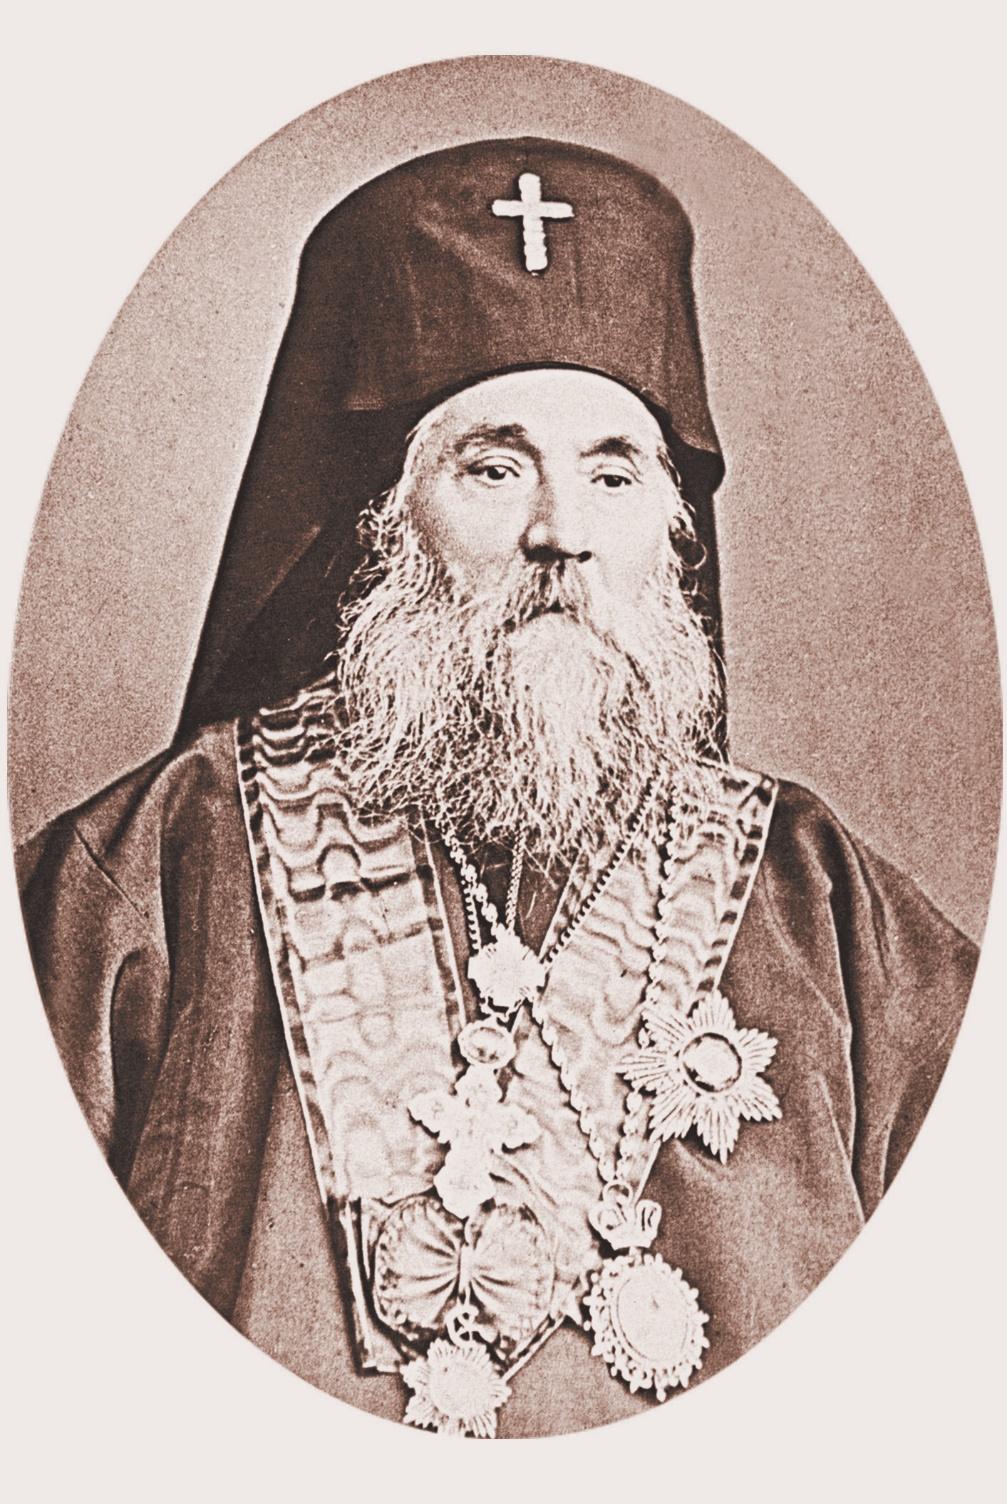 Антим I По това време, той е една от най-уважаваните фигури.първоначално се казва Атанас Чалъков.Приел е името Антим, когато става монах в Хилендарският манастир.